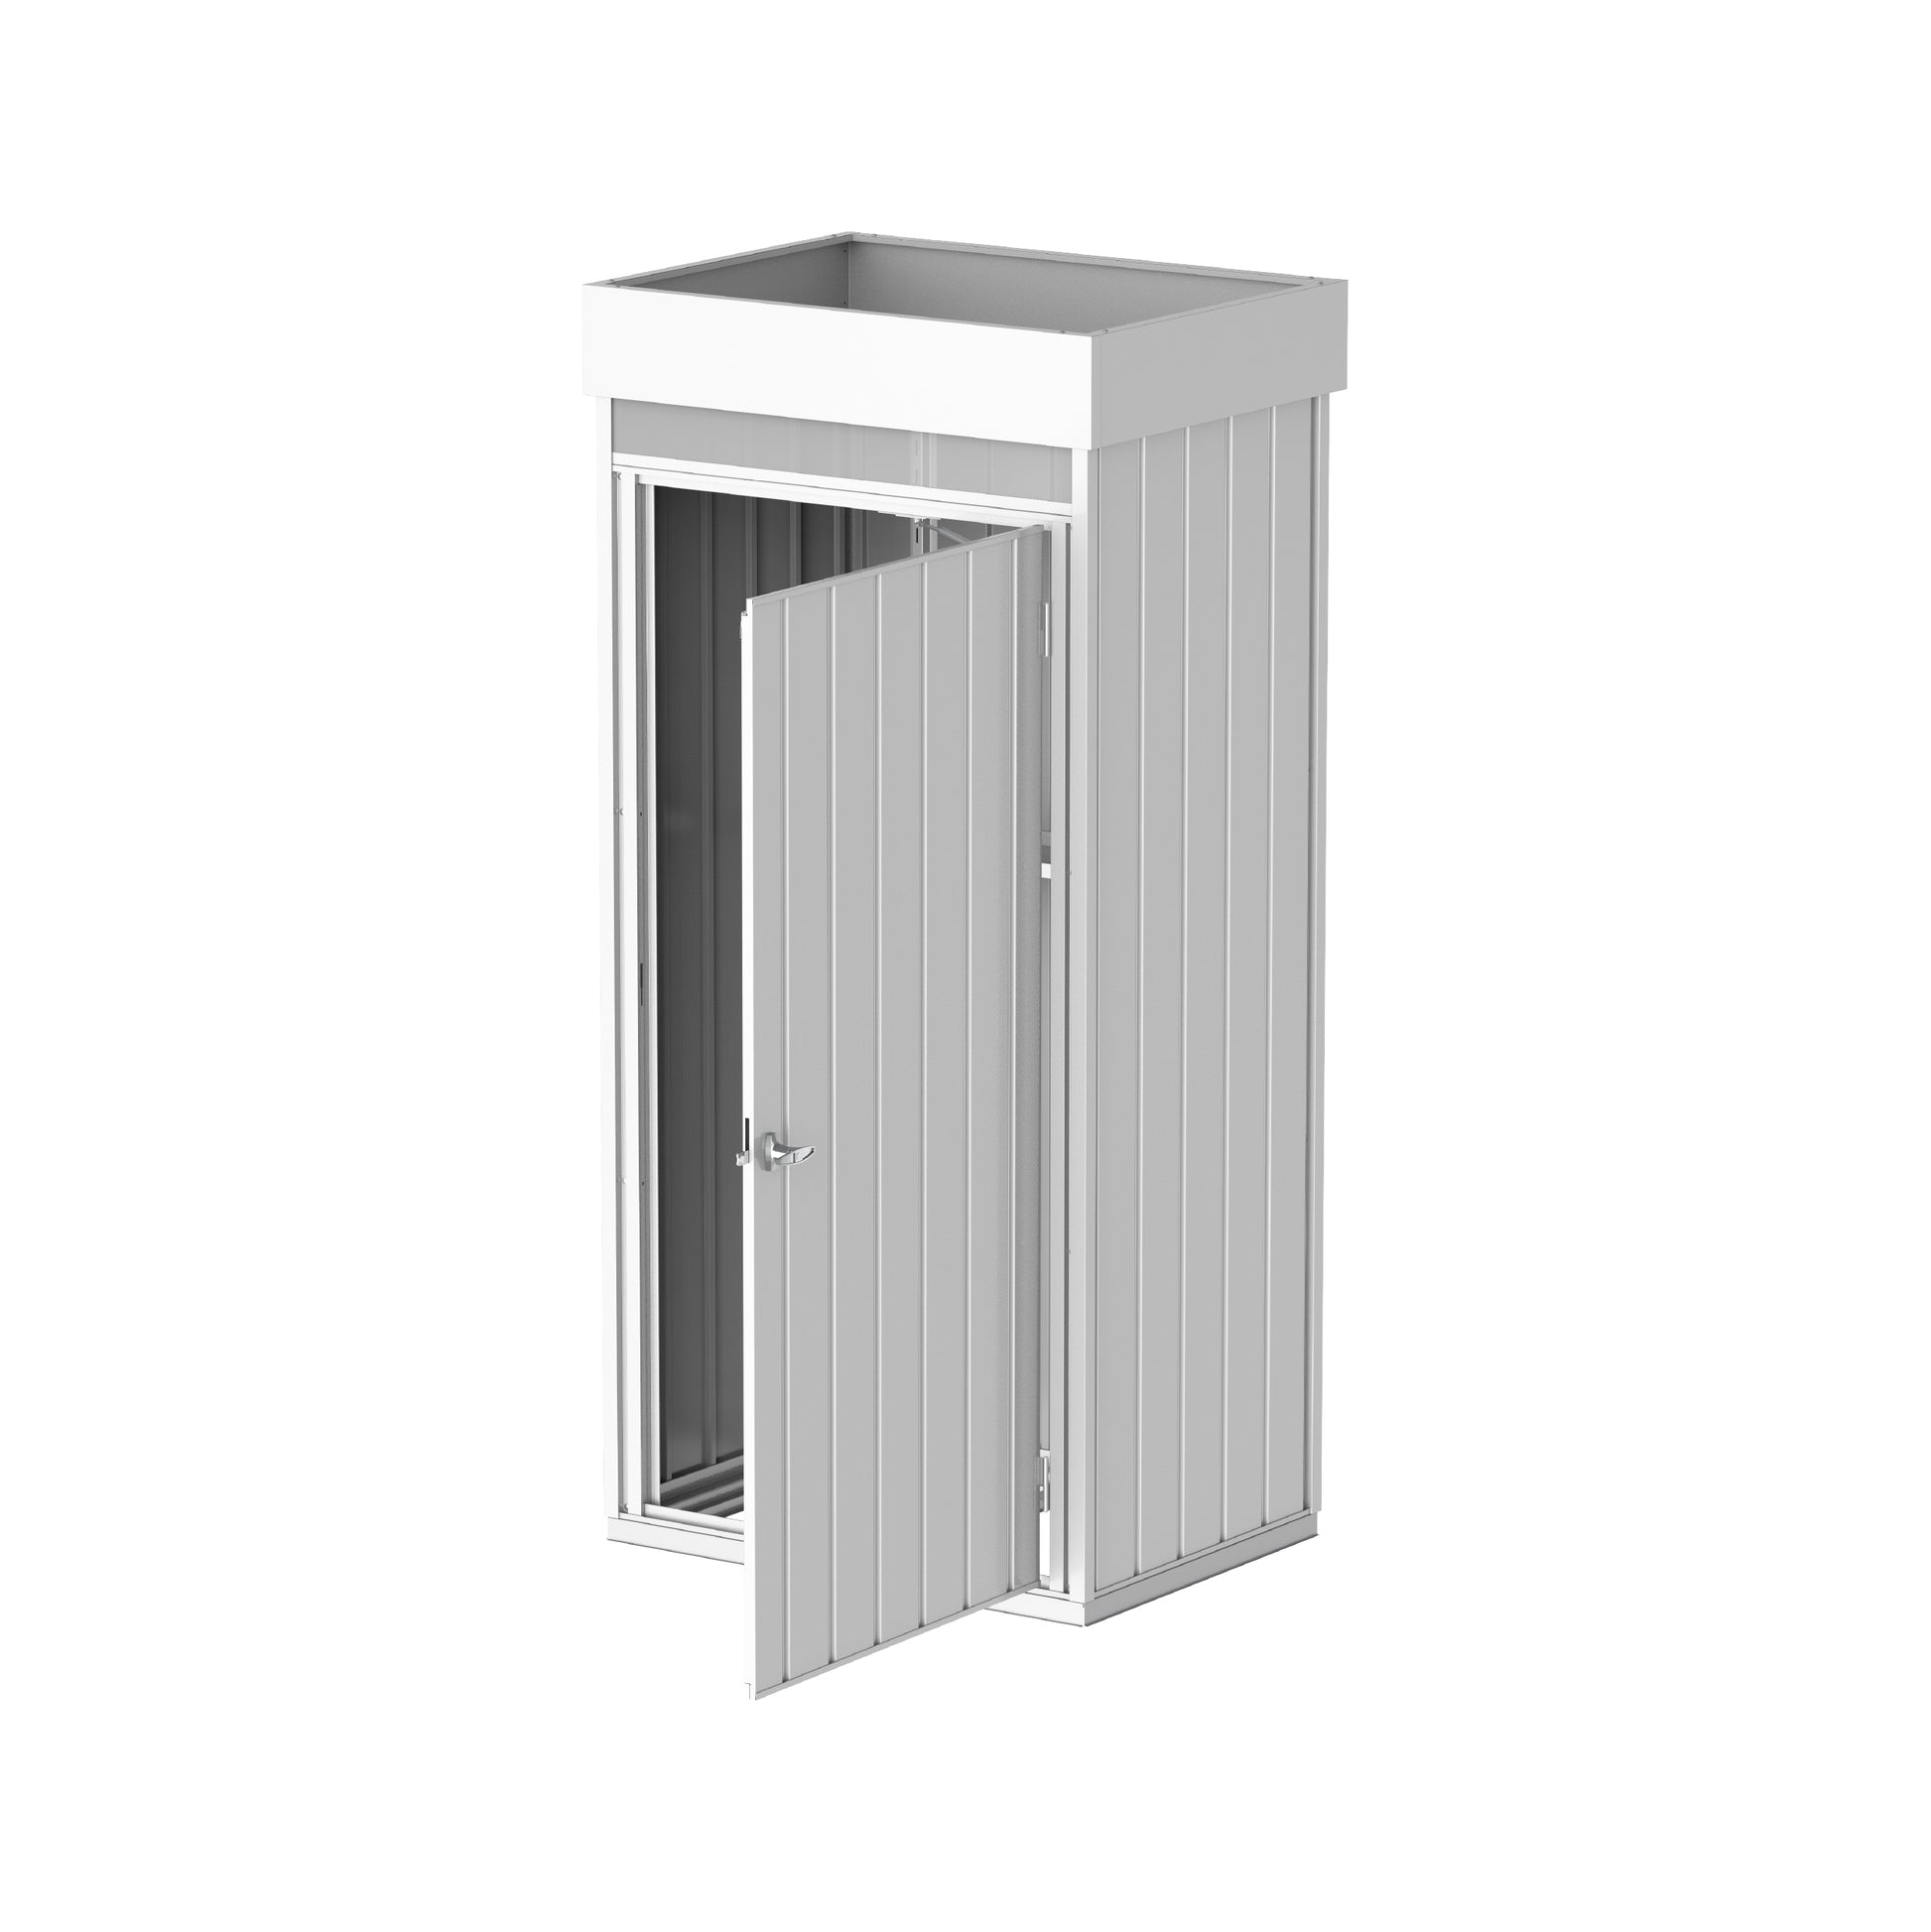 Palladium Steel High Store Lockers with Roof Garden Single Door Cabinets